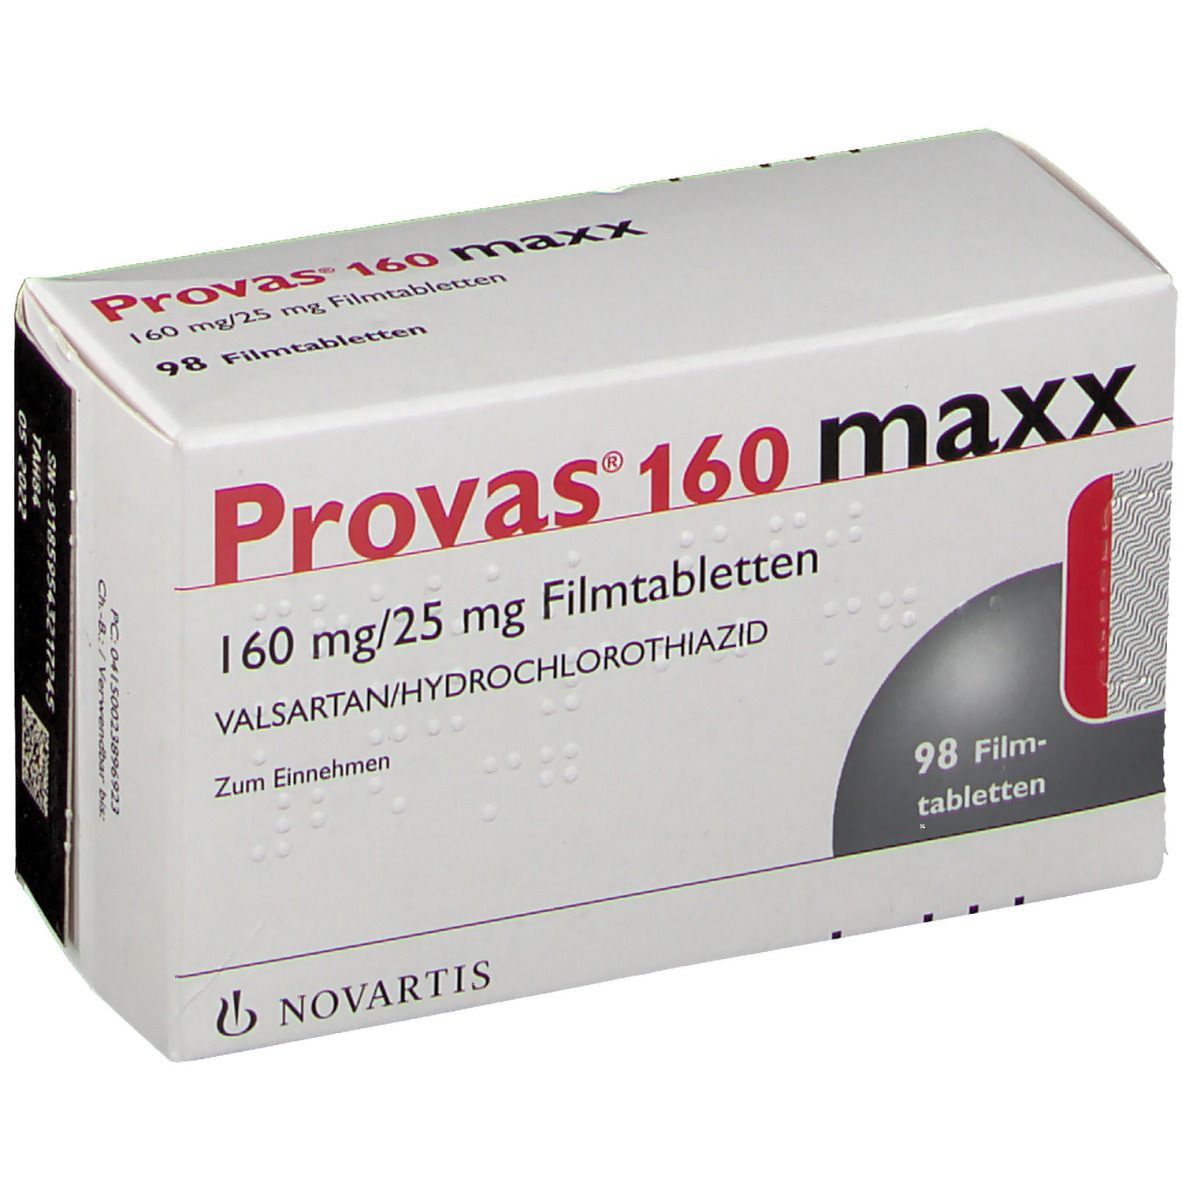 Provas® 160 maxx 160 mg/25 mg